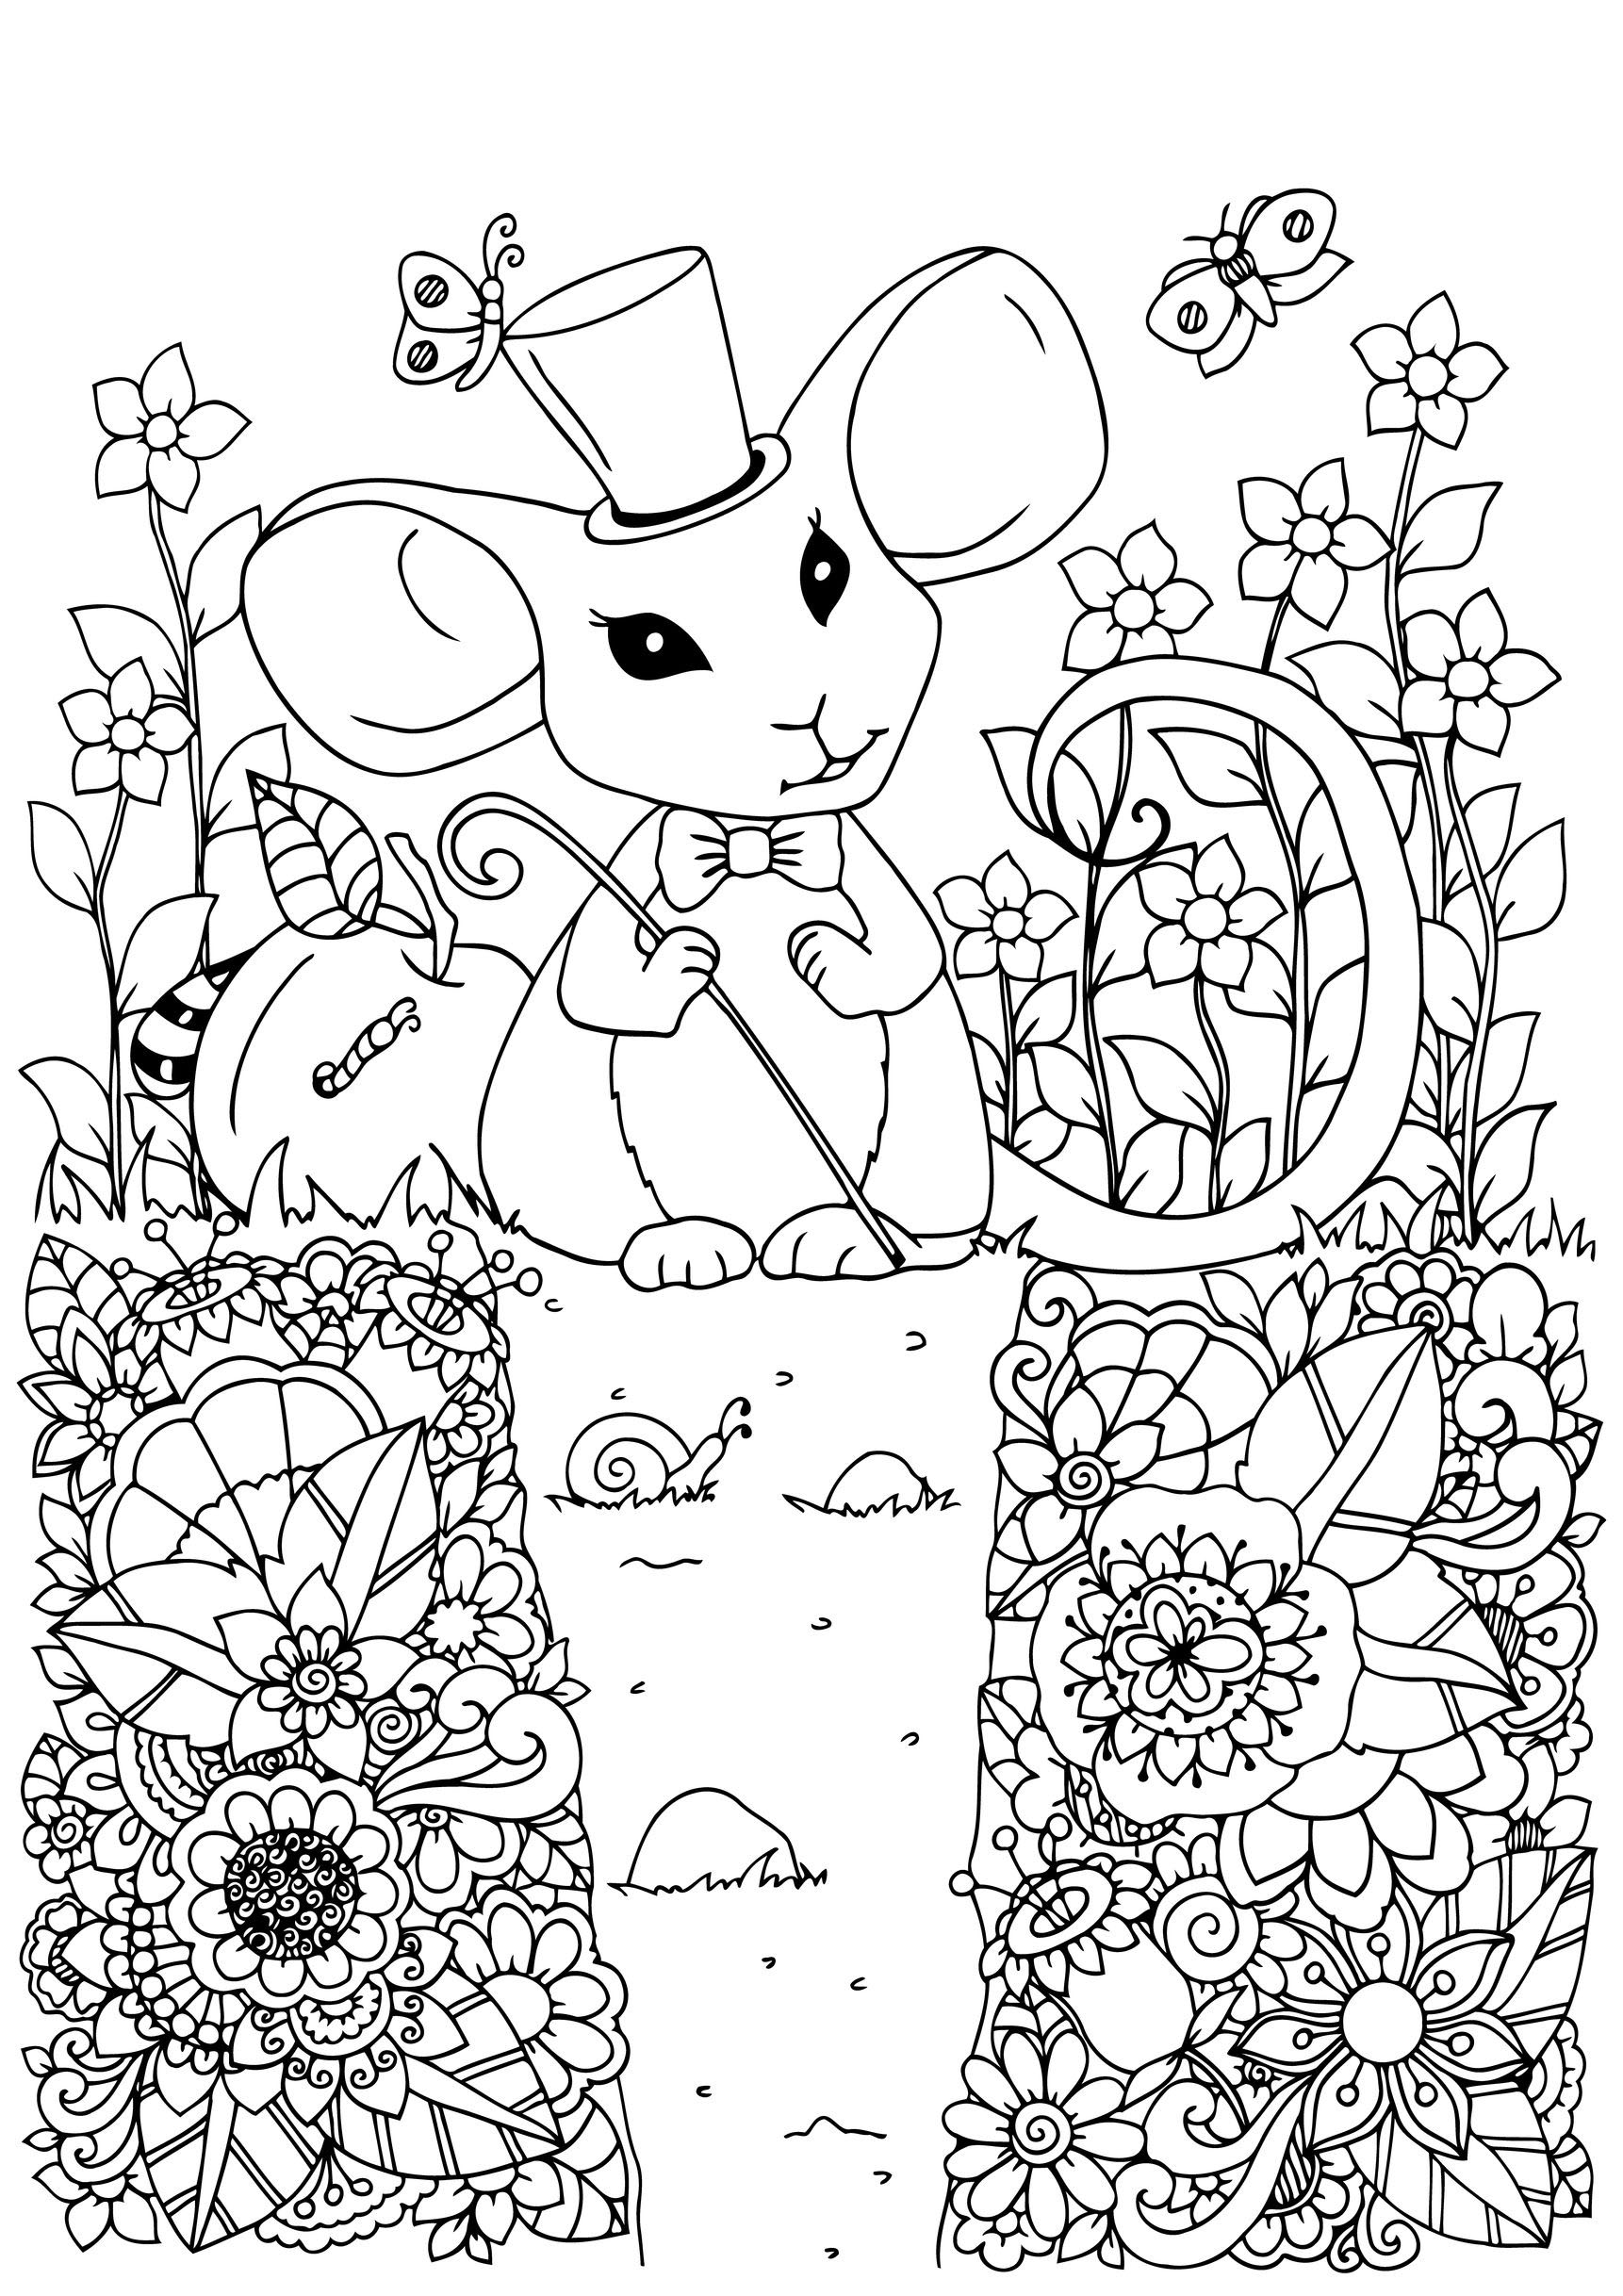 Niedliche Maus mit ihrem Zaubererhut in einem Garten voller schöner Blumen, Quelle : 123rf   Künstler : Tanvetka